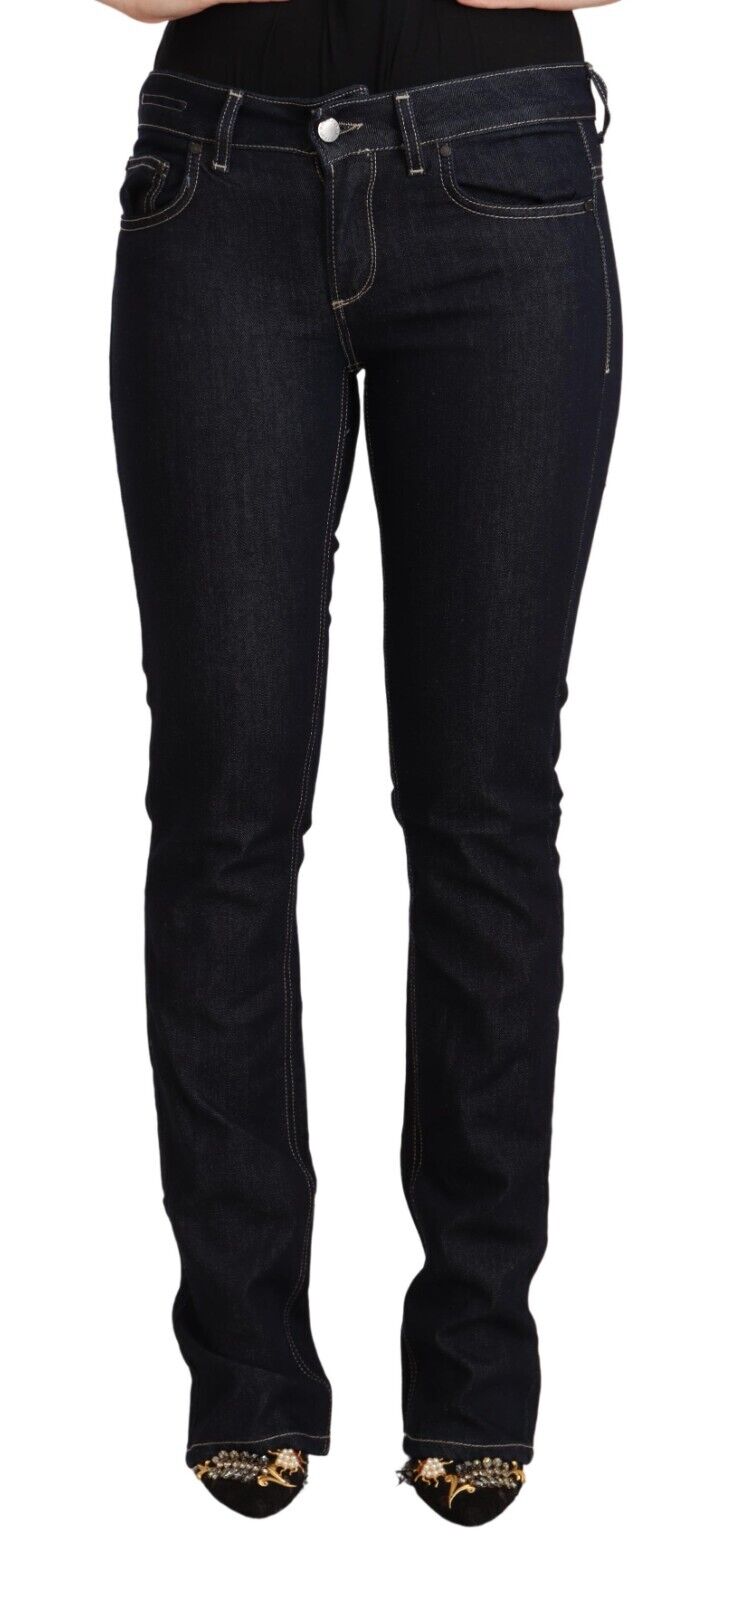 Джинсы GF FERRE Черные хлопковые эластичные женские обтягивающие джинсы с низкой талией s. W28 Рекомендуемая розничная цена 300 долларов США